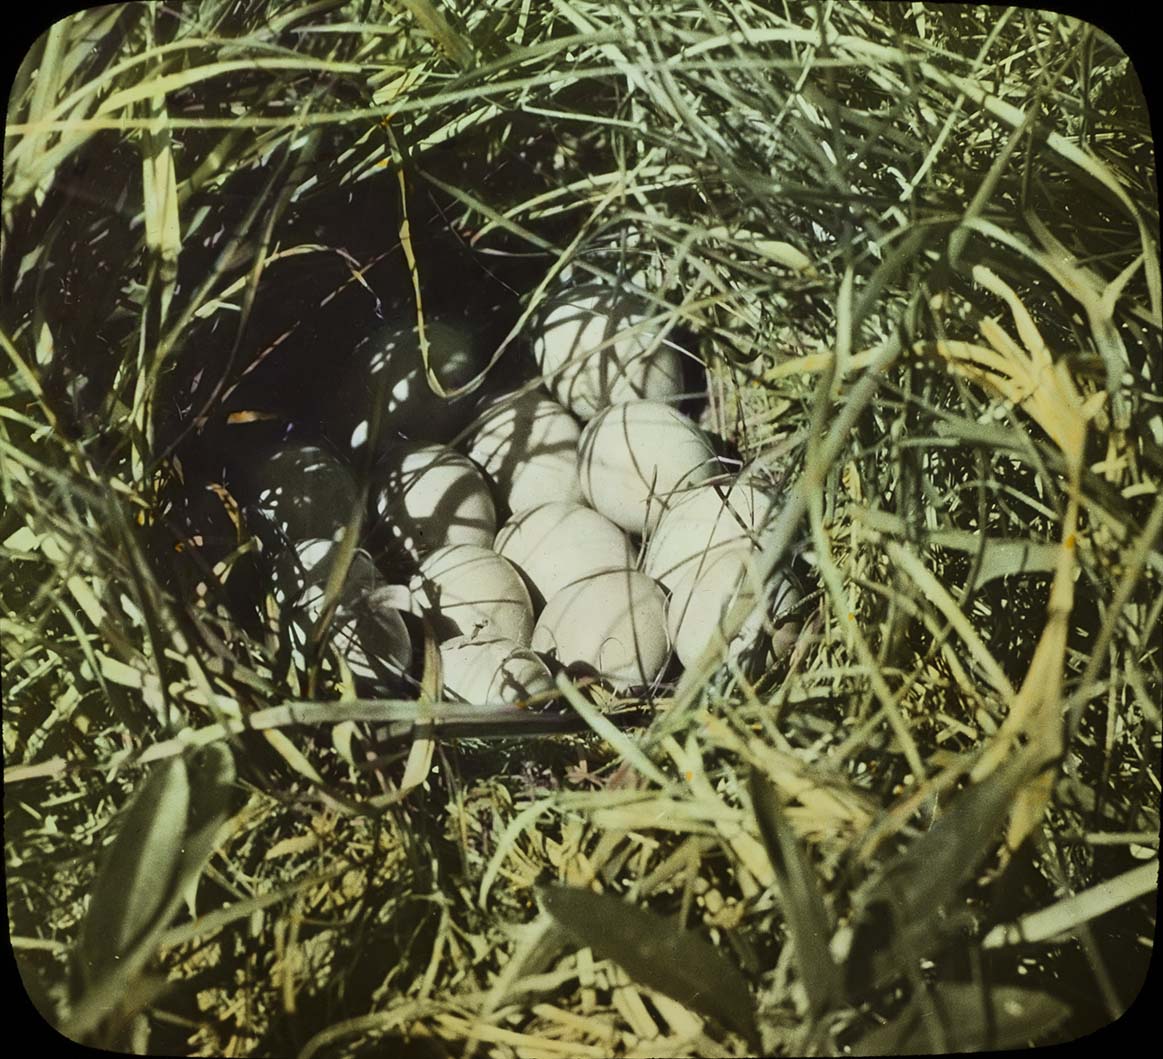 Lantern slide of eggs in a Prairie Chicken nest